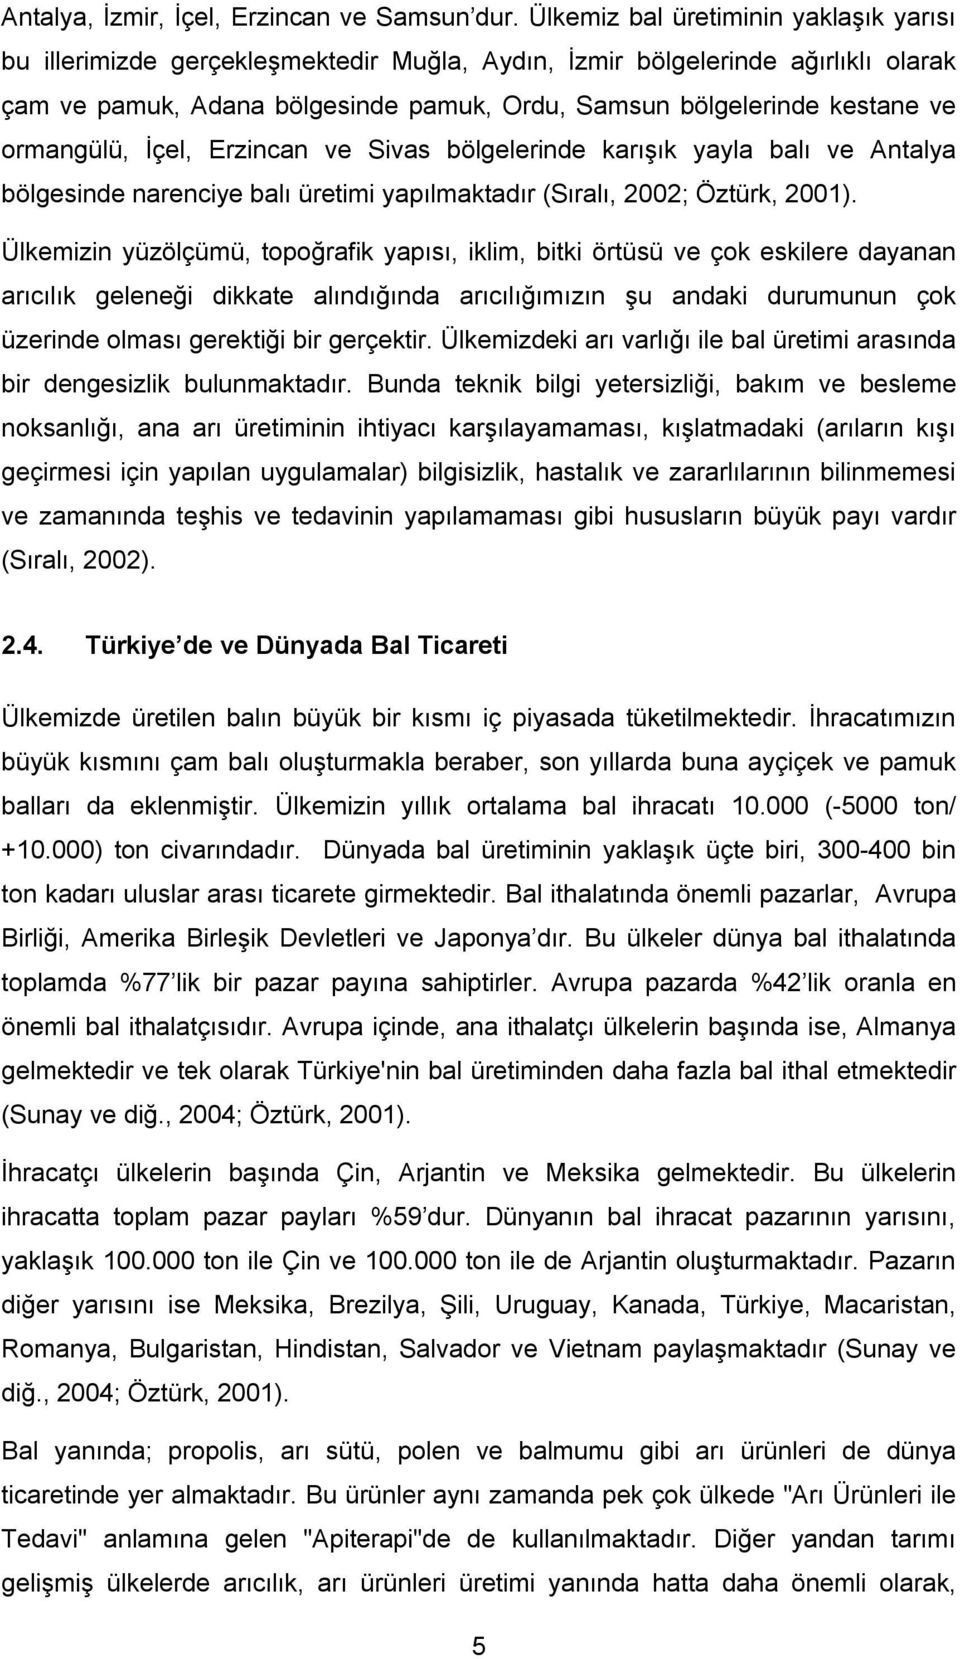 ormangülü, İçel, Erzincan ve Sivas bölgelerinde karışık yayla balı ve Antalya bölgesinde narenciye balı üretimi yapılmaktadır (Sıralı, 2002; Öztürk, 2001).